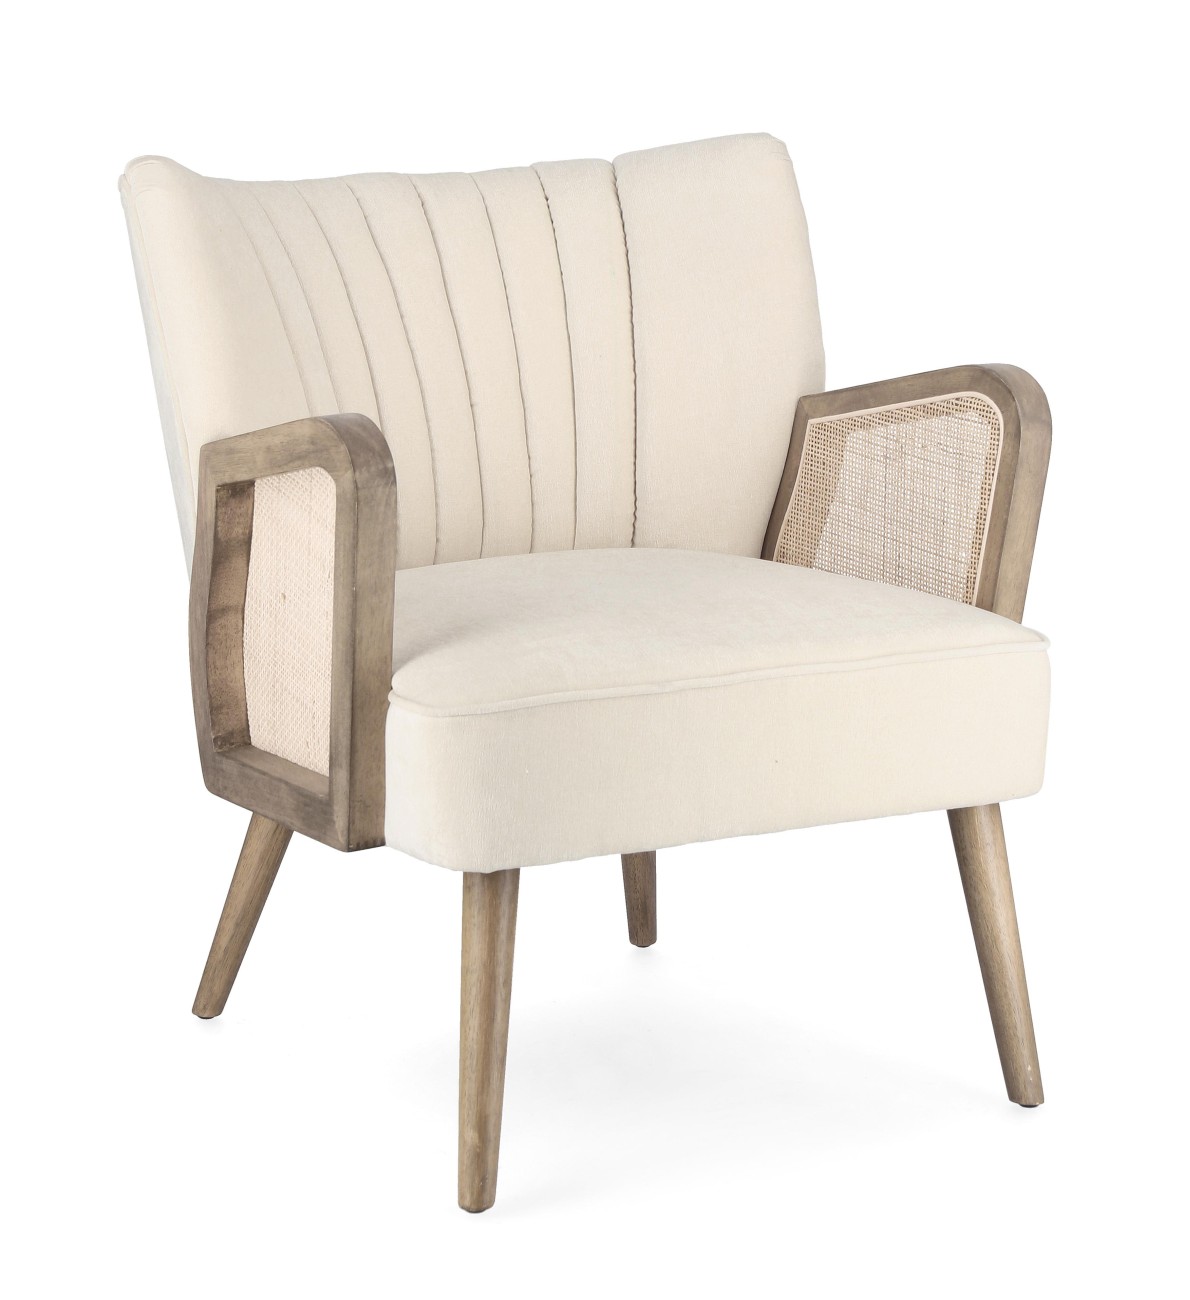 Der Sessel Virna überzeugt mit seinem modernen Stil. Gefertigt wurde er aus einem Stoff-Bezug, welcher einen Creme Farbton besitzt. Das Gestell ist aus Kautschukholz und hat eine braune Farbe. Der Sessel verfügt über eine Armlehne.